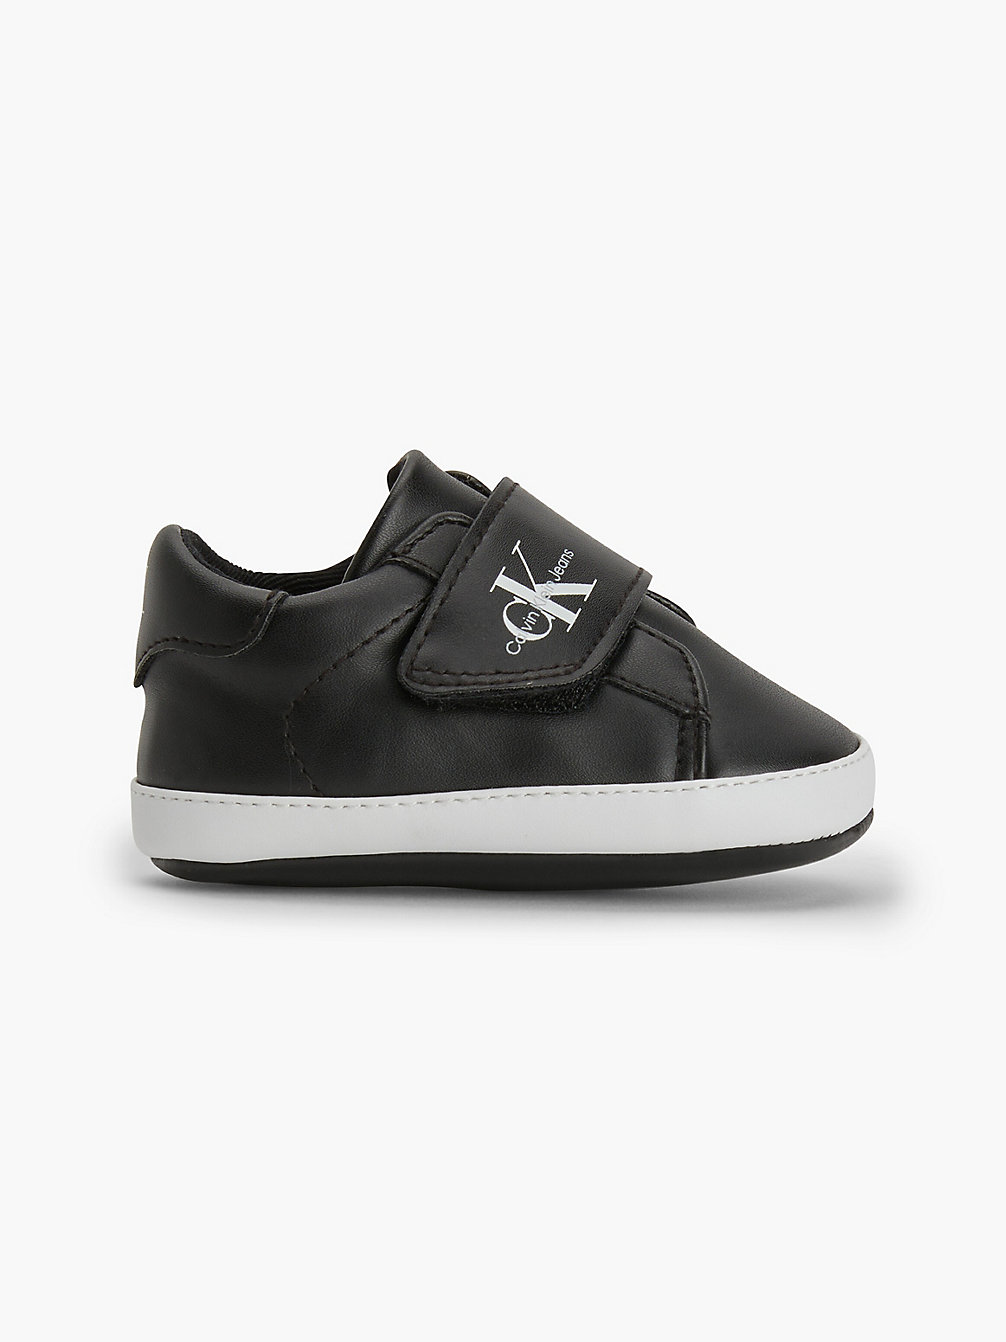 BLACK > Детские кроссовки из переработанных материалов > undefined boys - Calvin Klein